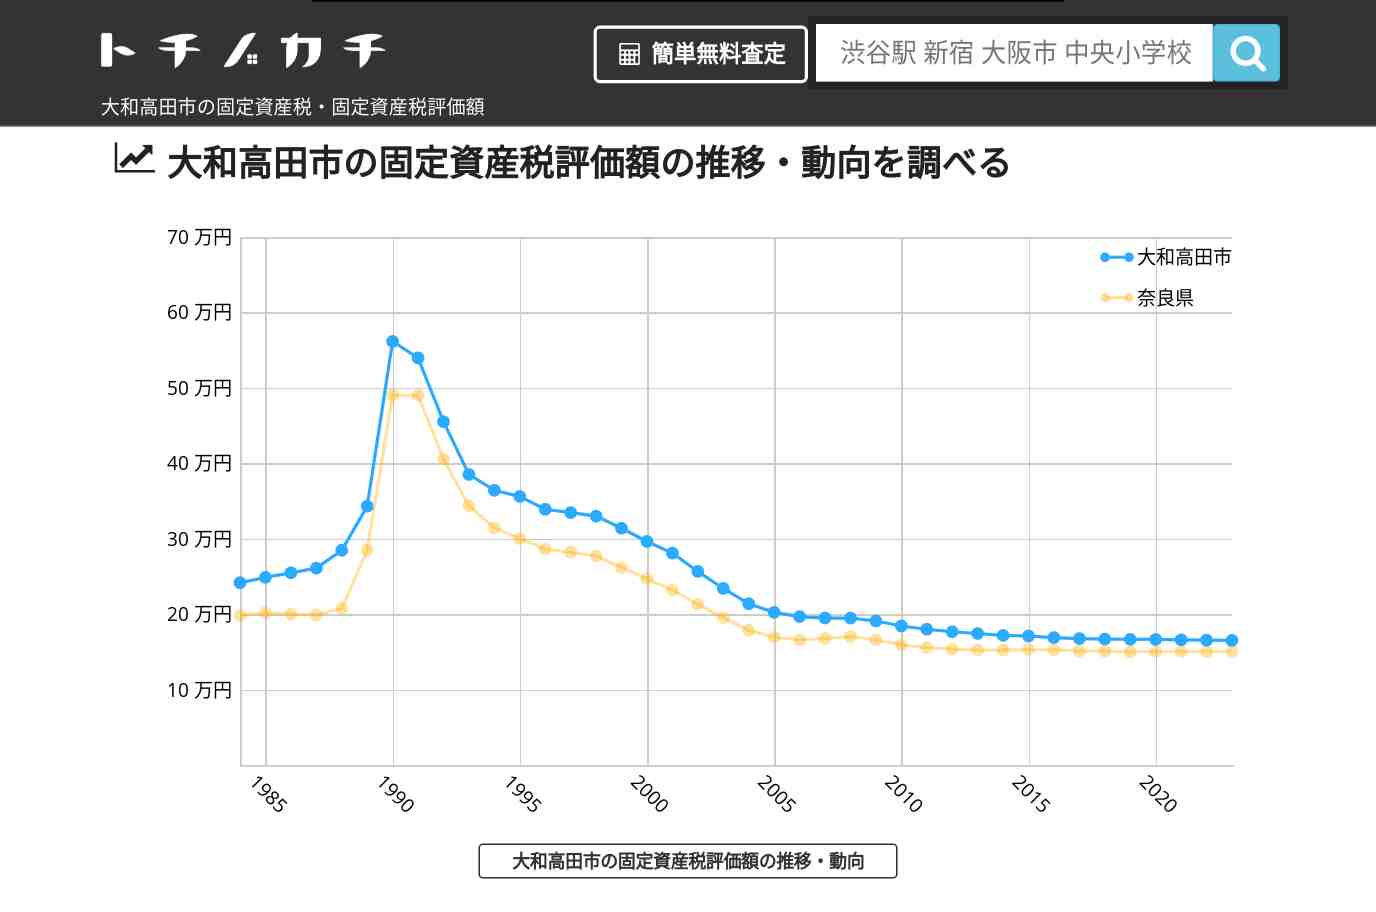 土庫小学校(奈良県 大和高田市)周辺の固定資産税・固定資産税評価額 | トチノカチ